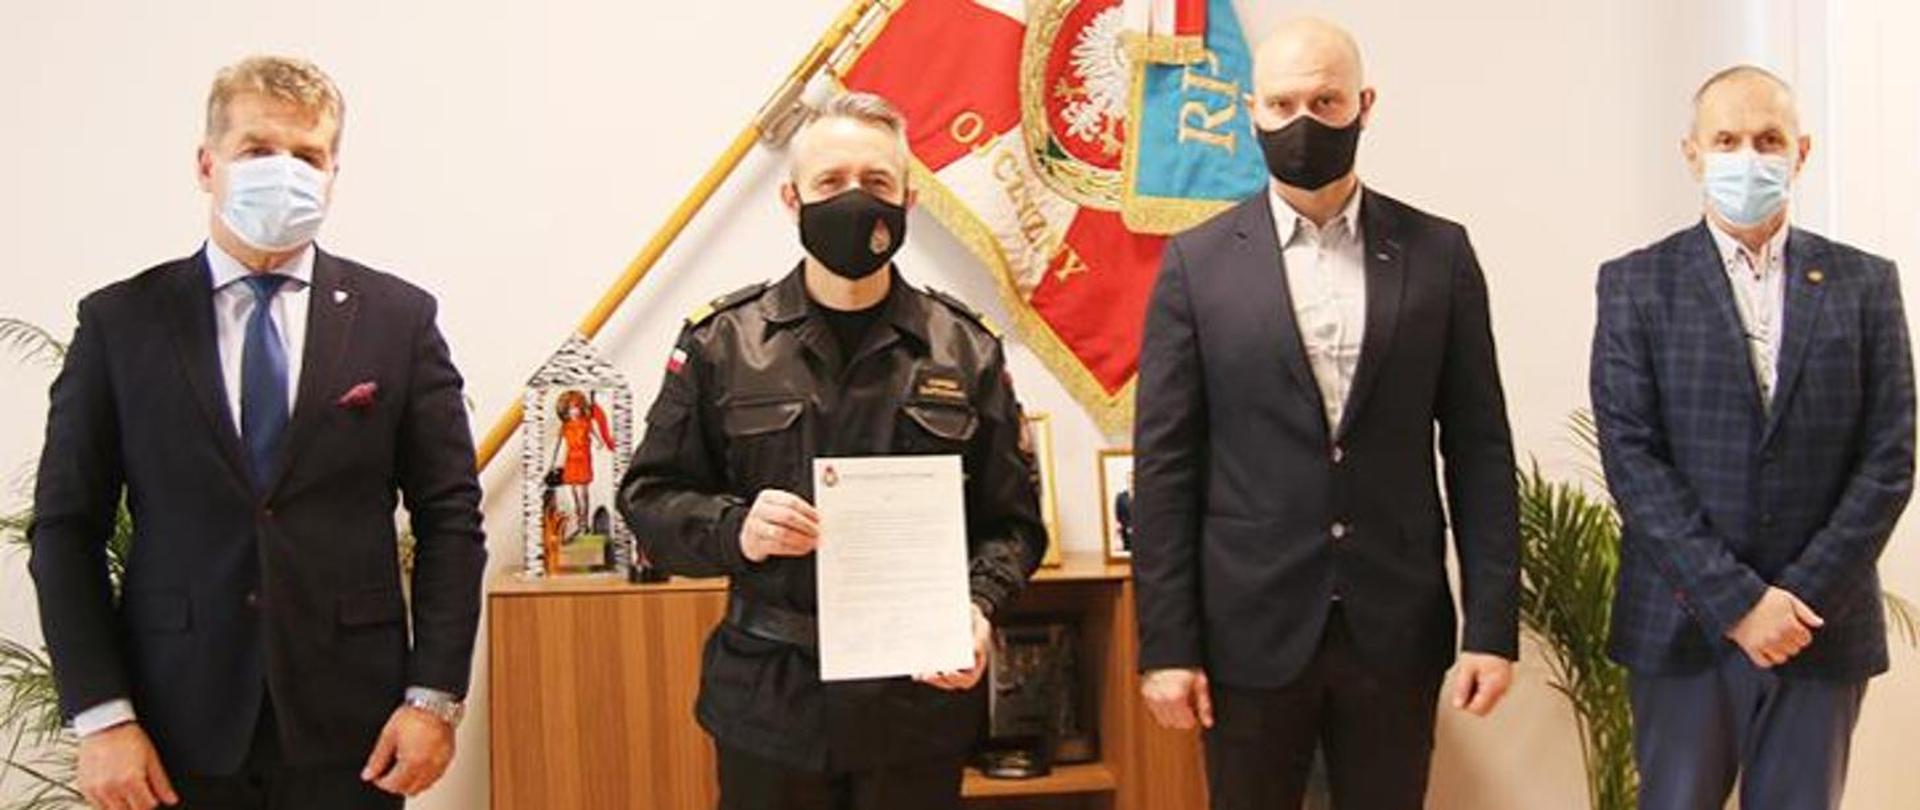 Na fotografii znajduje się czterech mężczyzn w maseczkach zakrywających usta i nos. Drugi od lewej strony stoi Komendant Główny PSP, który trzyma w ręce podpisany apel związany z oddawaniem osocza.